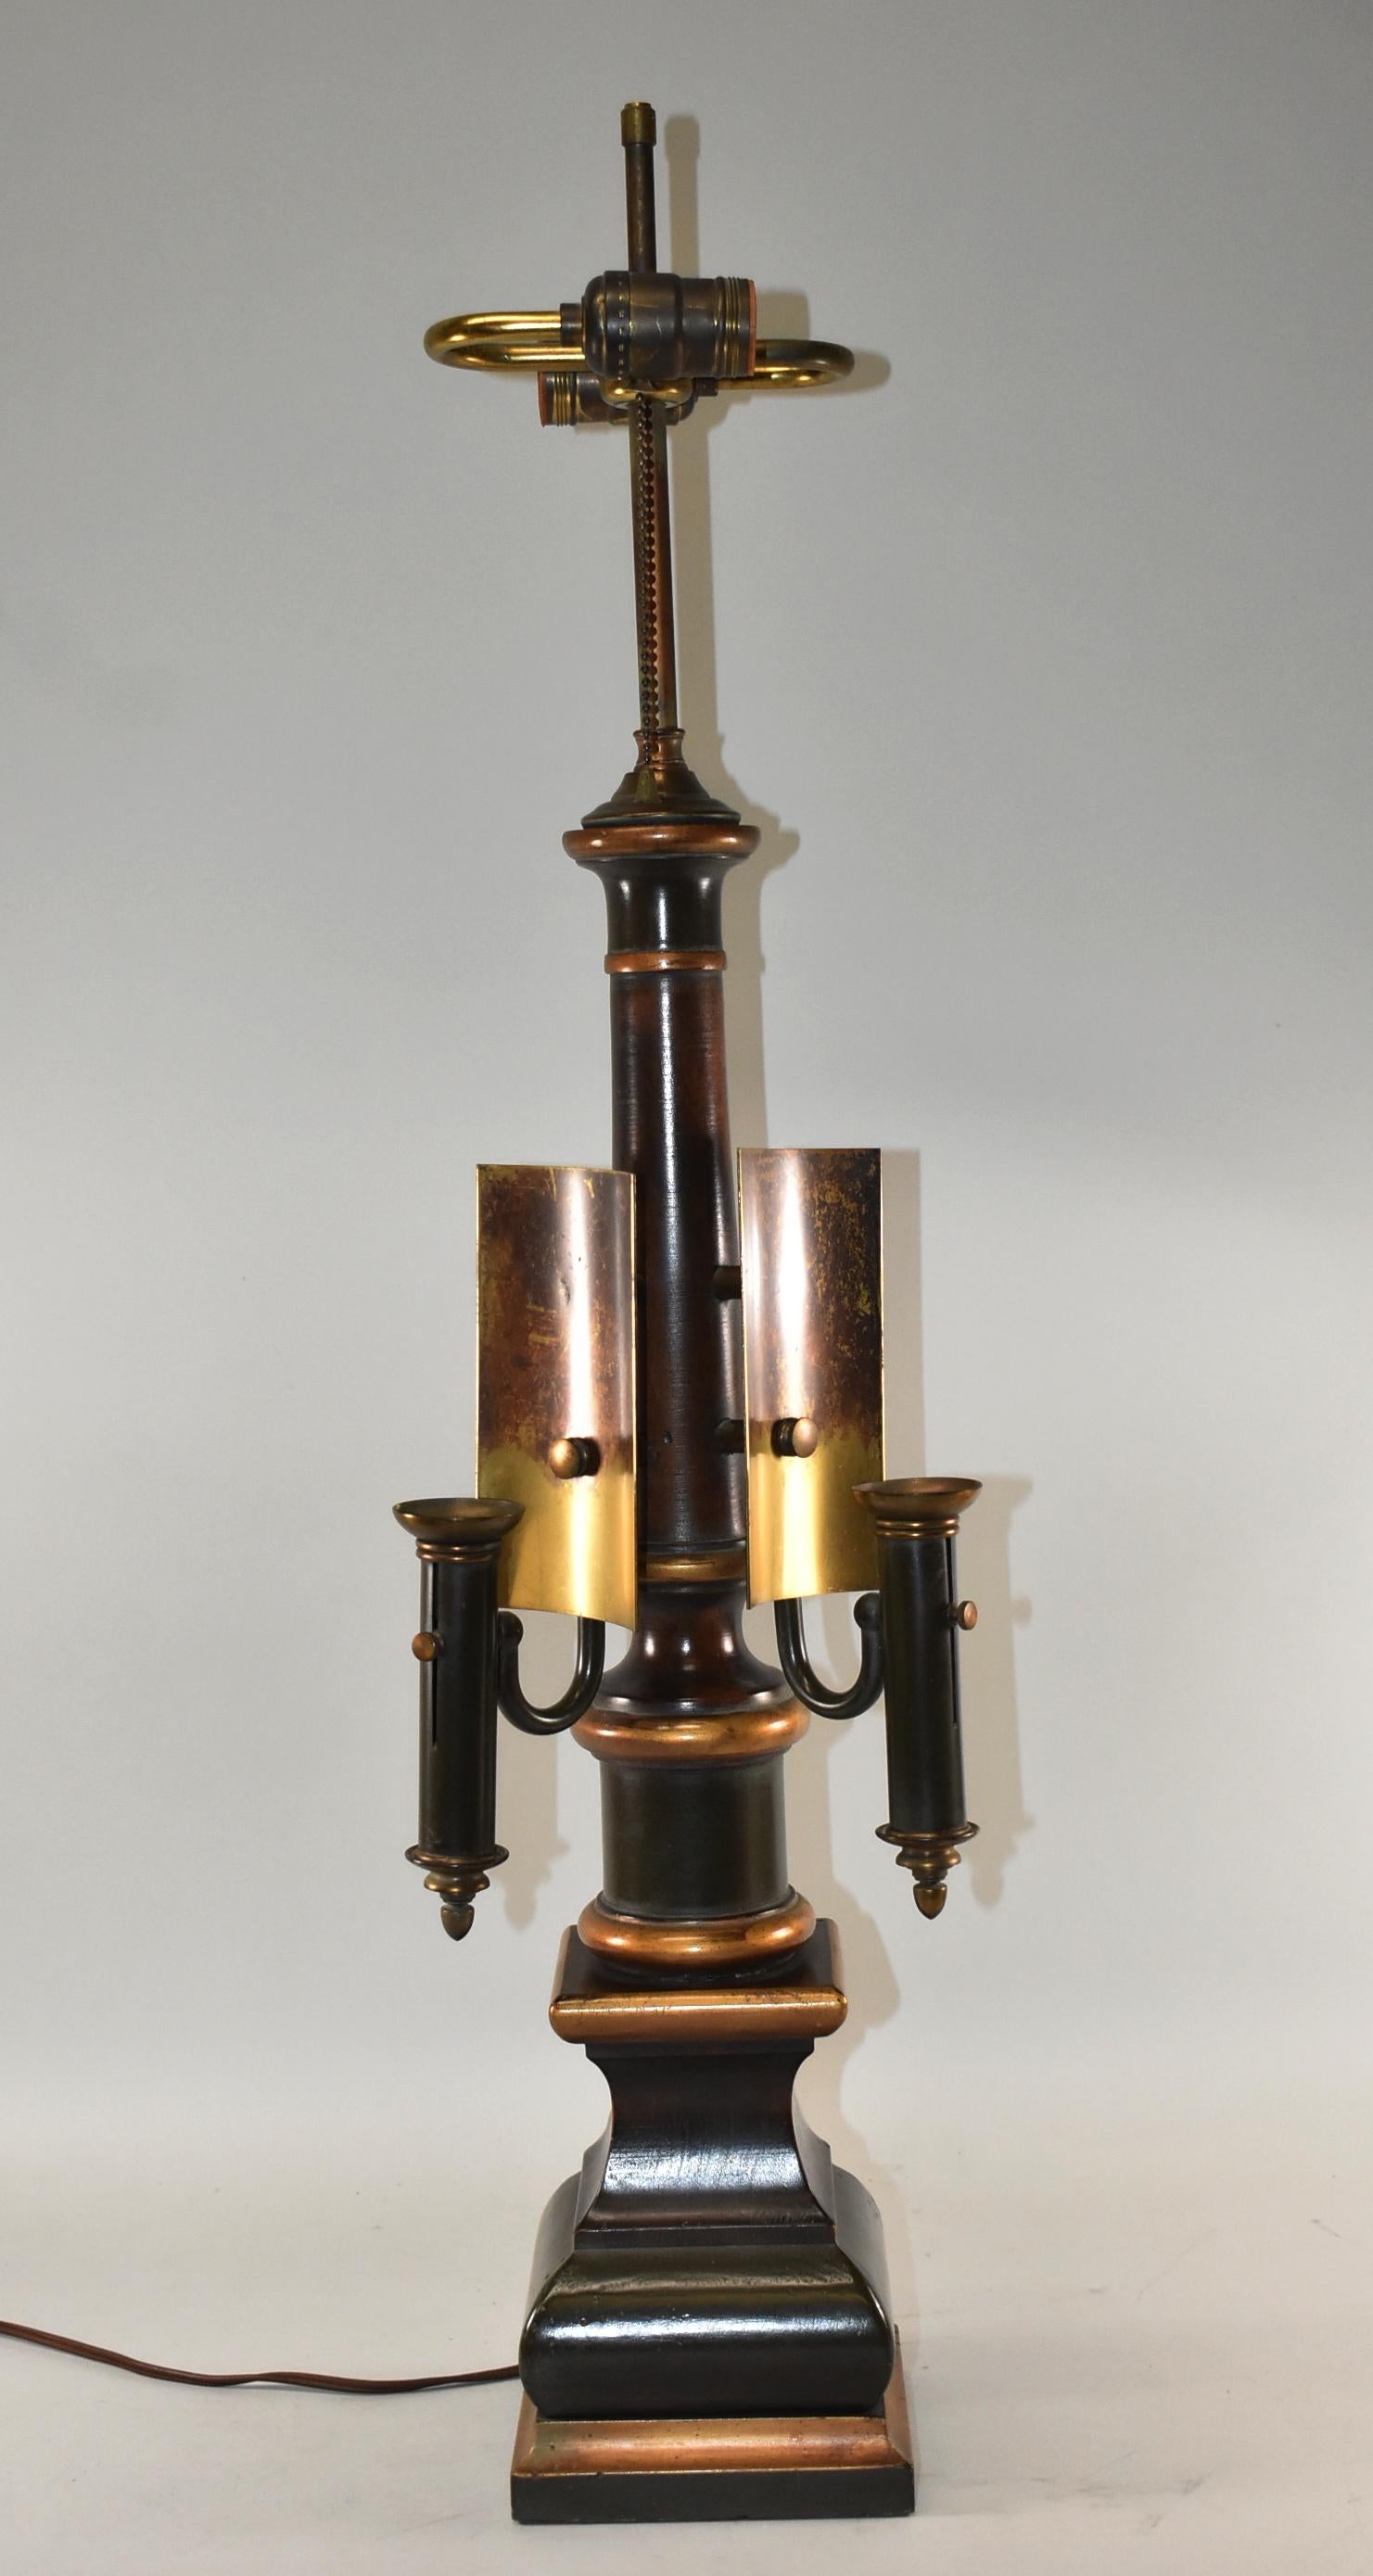 Lampe de table Frederick Cooper à double douille avec bougeoirs décoratifs réglables. Finition peinte dégradée avec des reflets dorés.